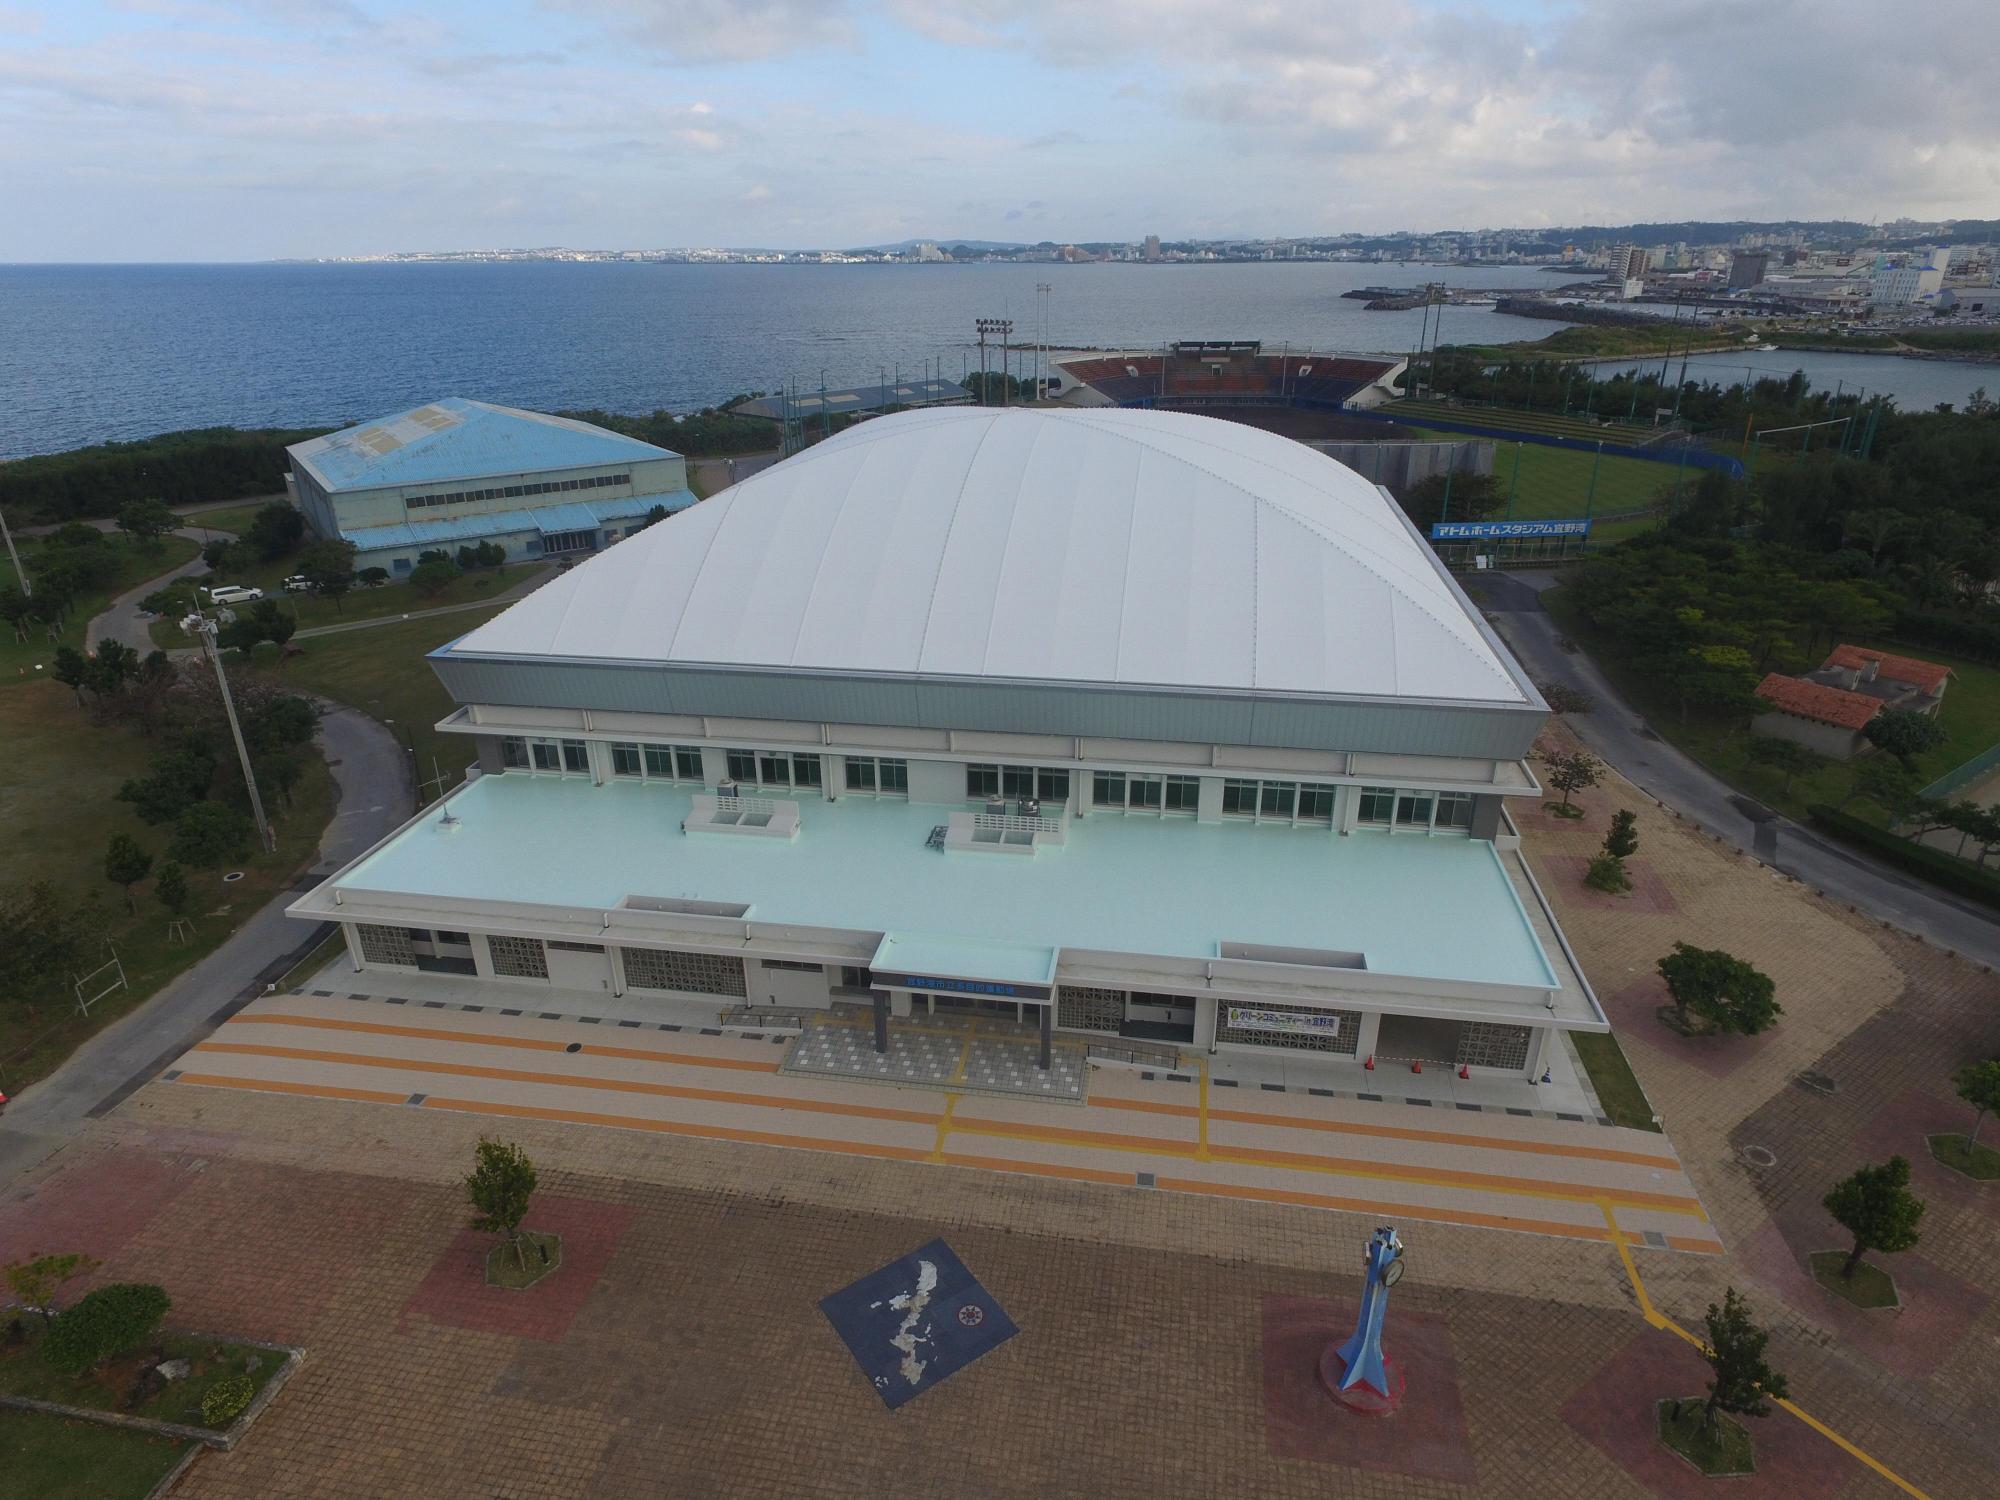 海の近くにある屋根が台形の形をした「宜野湾市立多目的運動場」を上空から撮影した写真